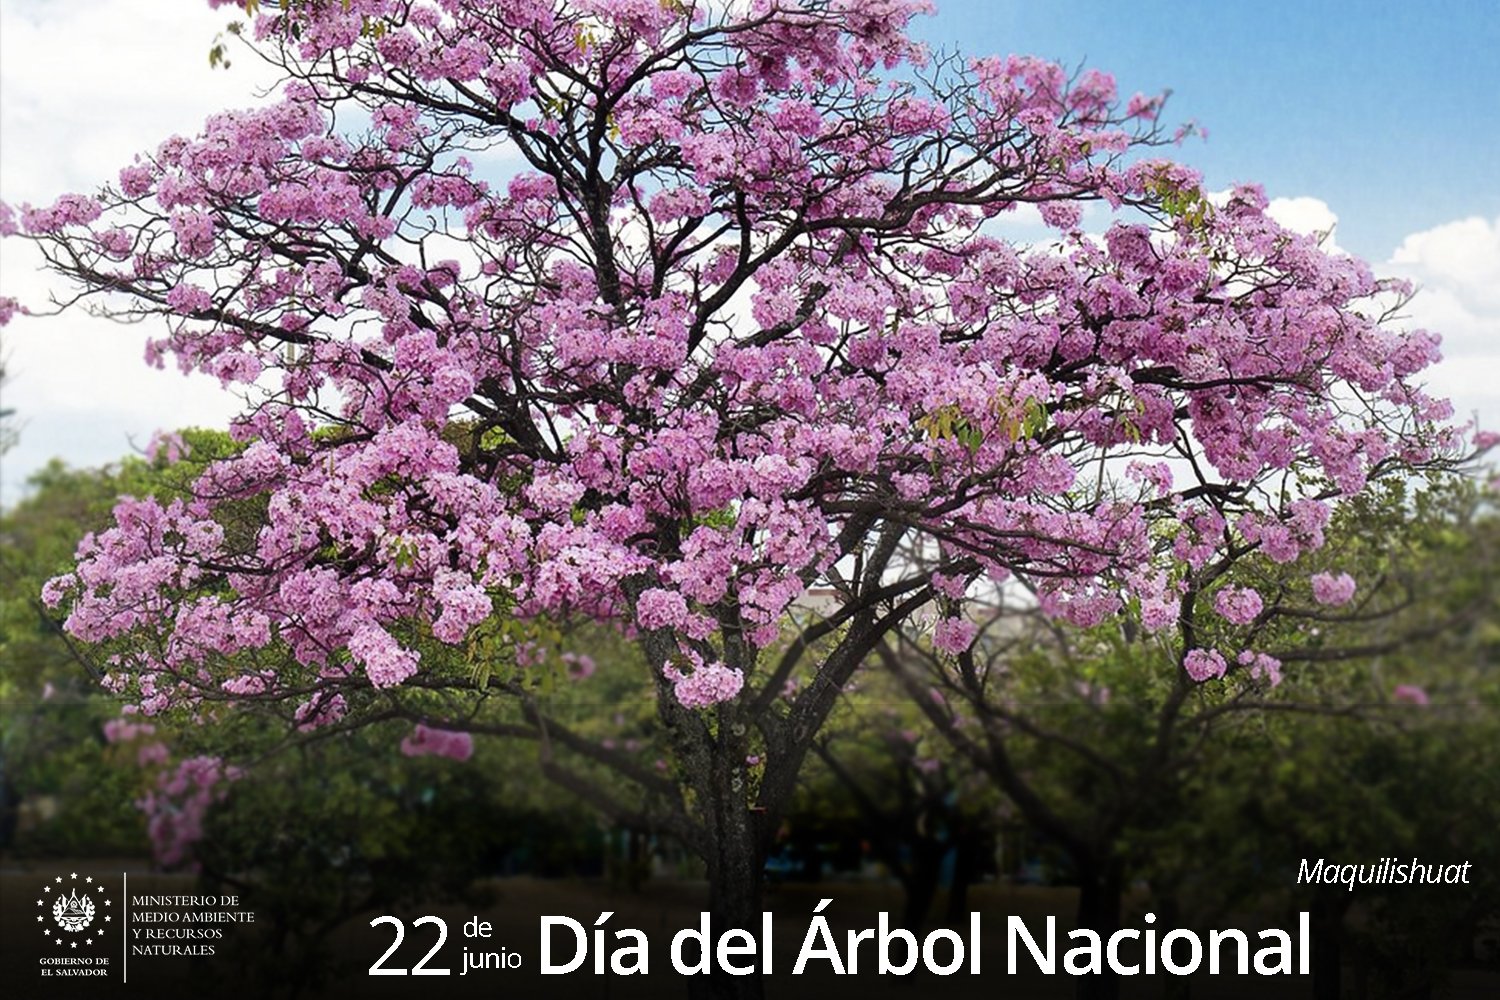 El maquilishuat es uno de los 2 árboles considerados nacionales en El Salvador.